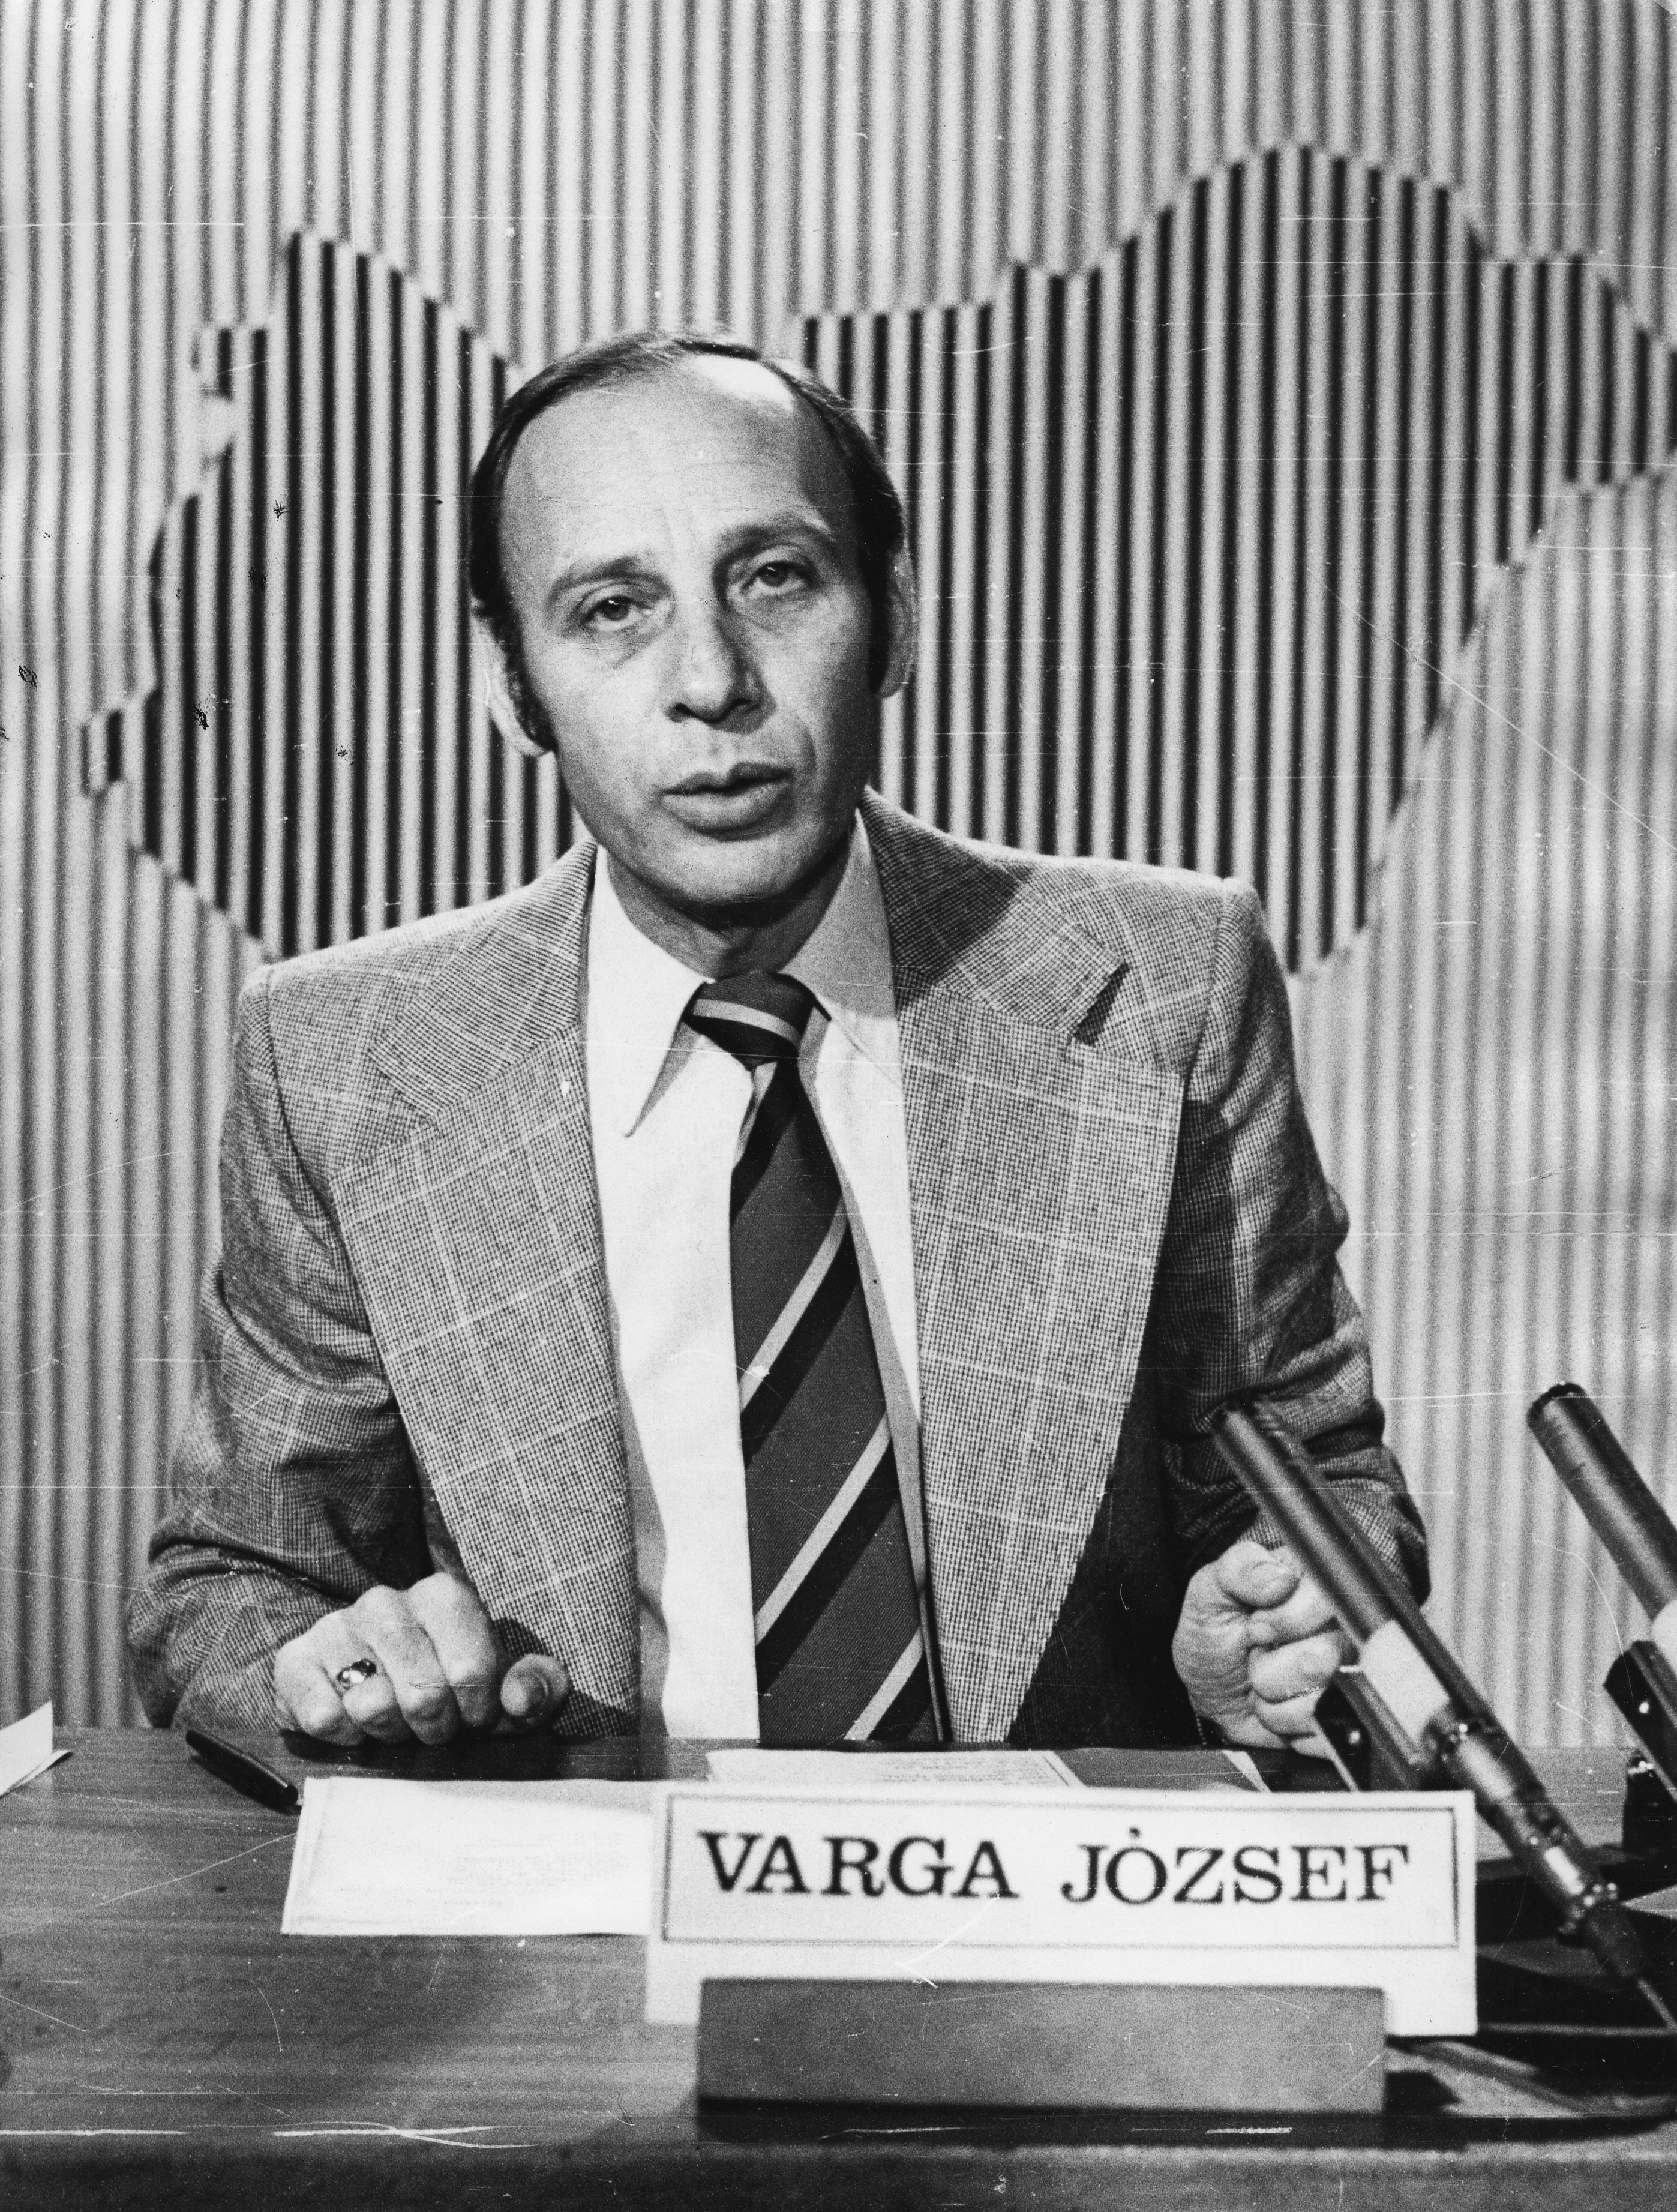 Varga József a legszebben beszélő tévés bemondó adás közben halt meg a  stúdióban - Blikk